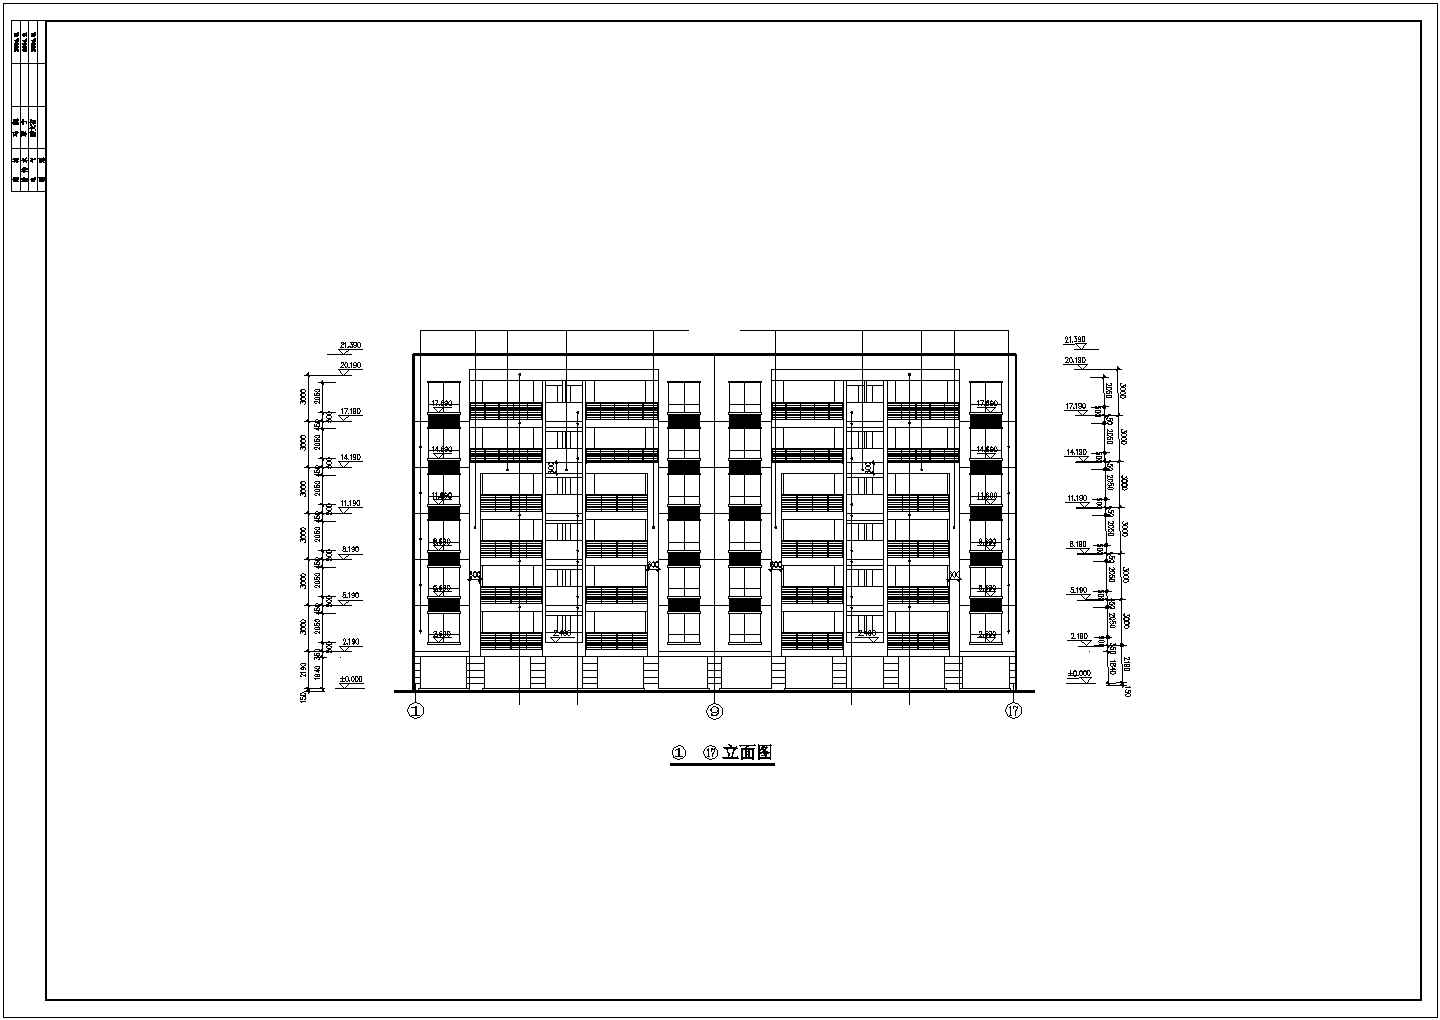 长35.04米 宽19.04米 七层二单元对称户型框架结构城市小区住宅全套完整大样图CAD图纸